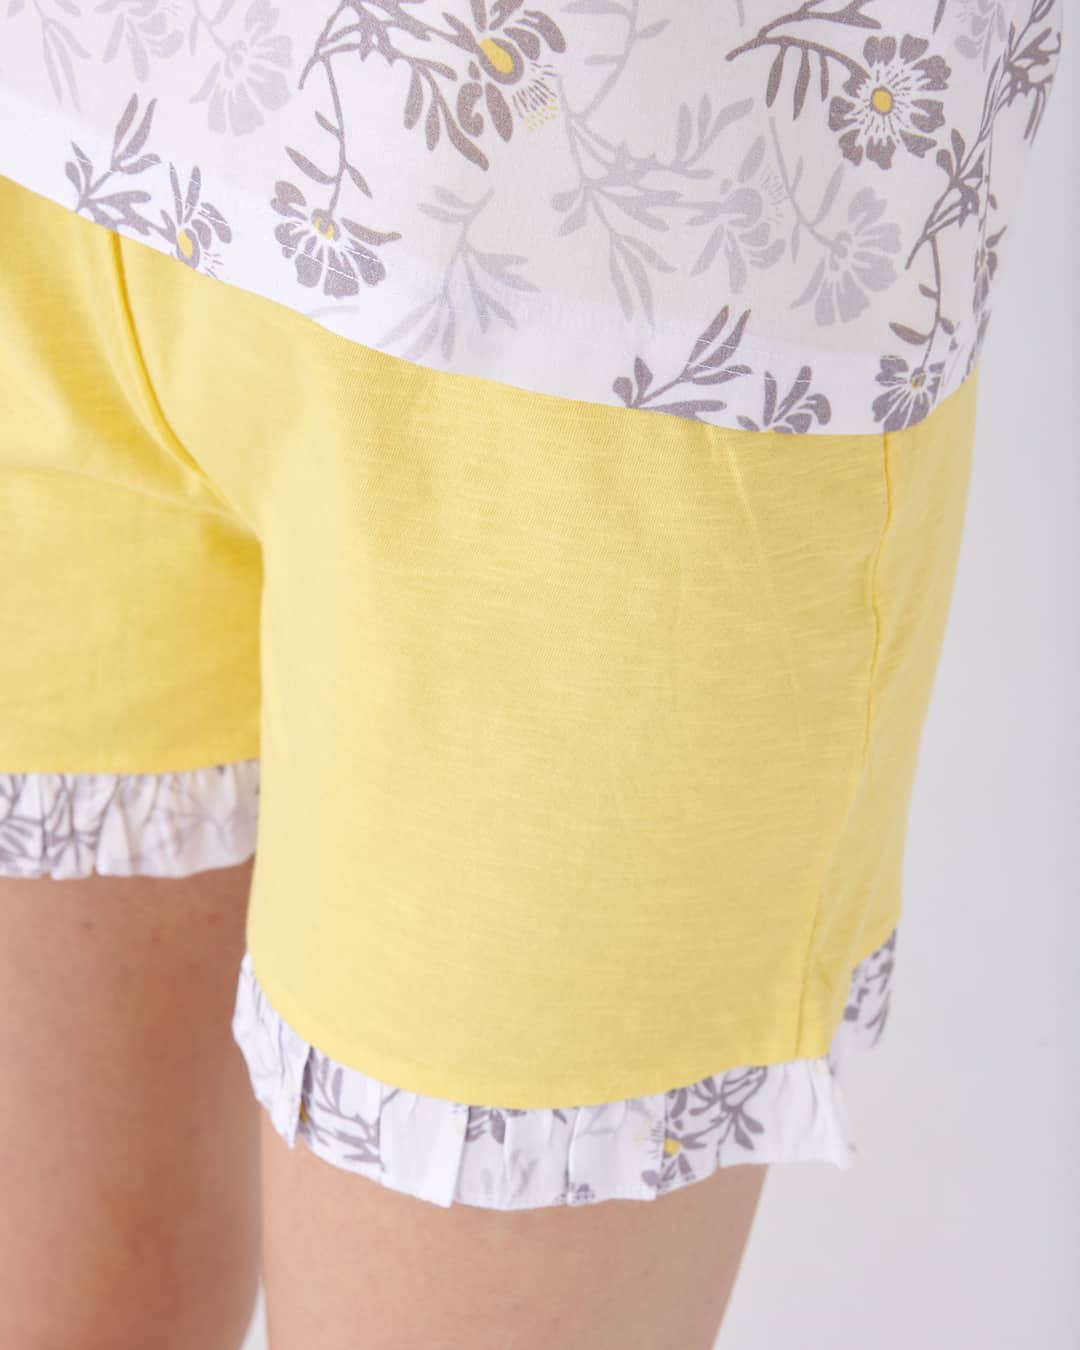 Dettaglio pantaloncino del pigiama a giromanica floreale